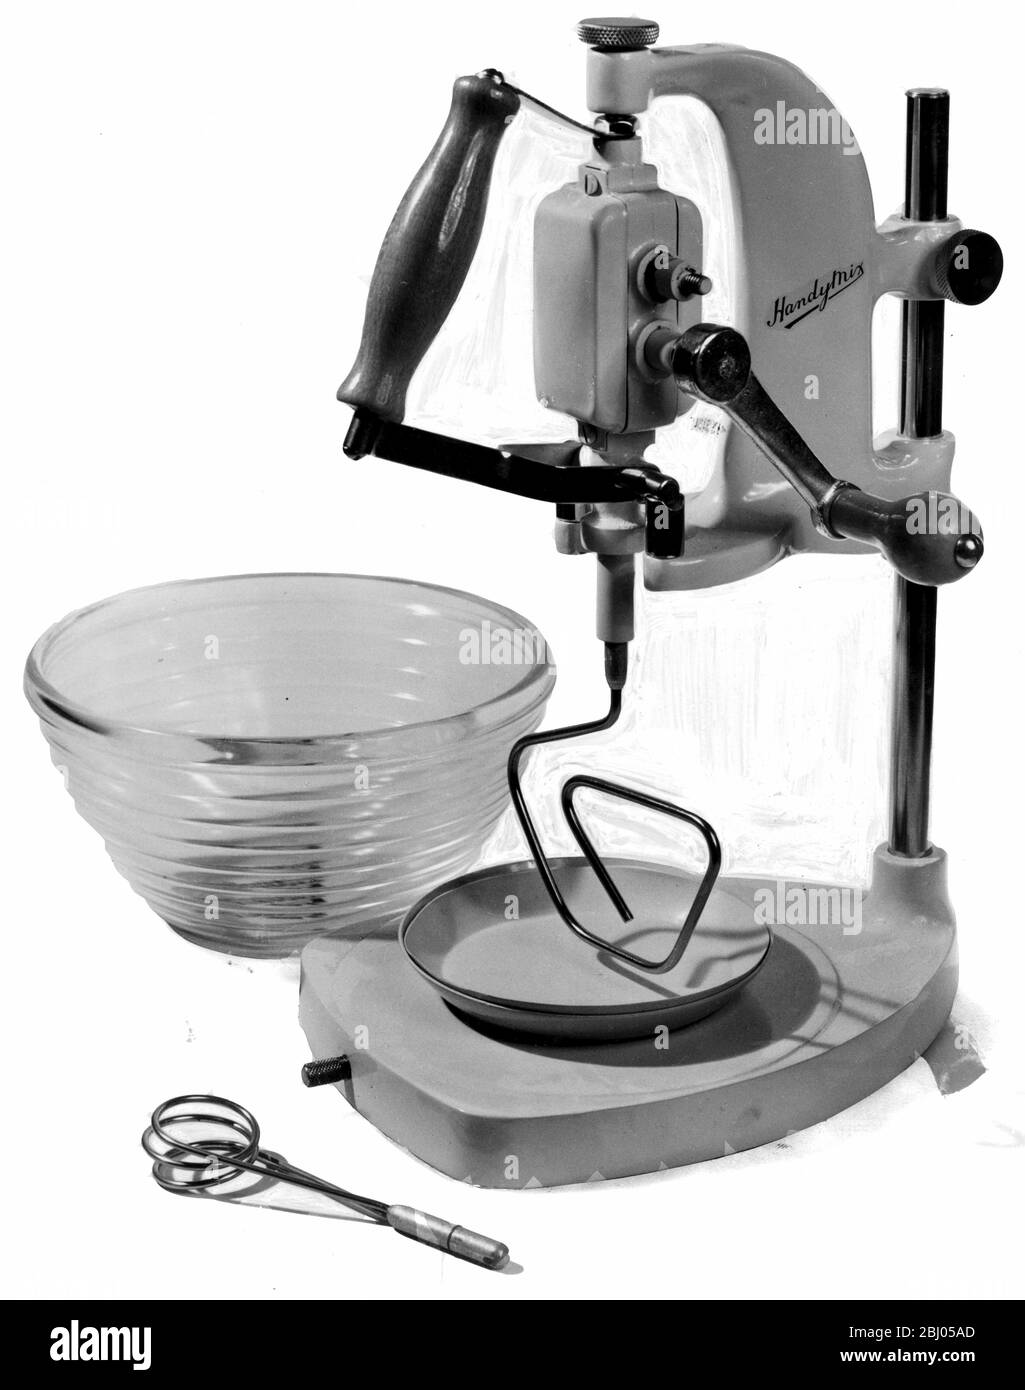 Le mixeur électrique Artisanat Mixer coûte 6 £ 19 s 4 d - avril 1953 Banque D'Images